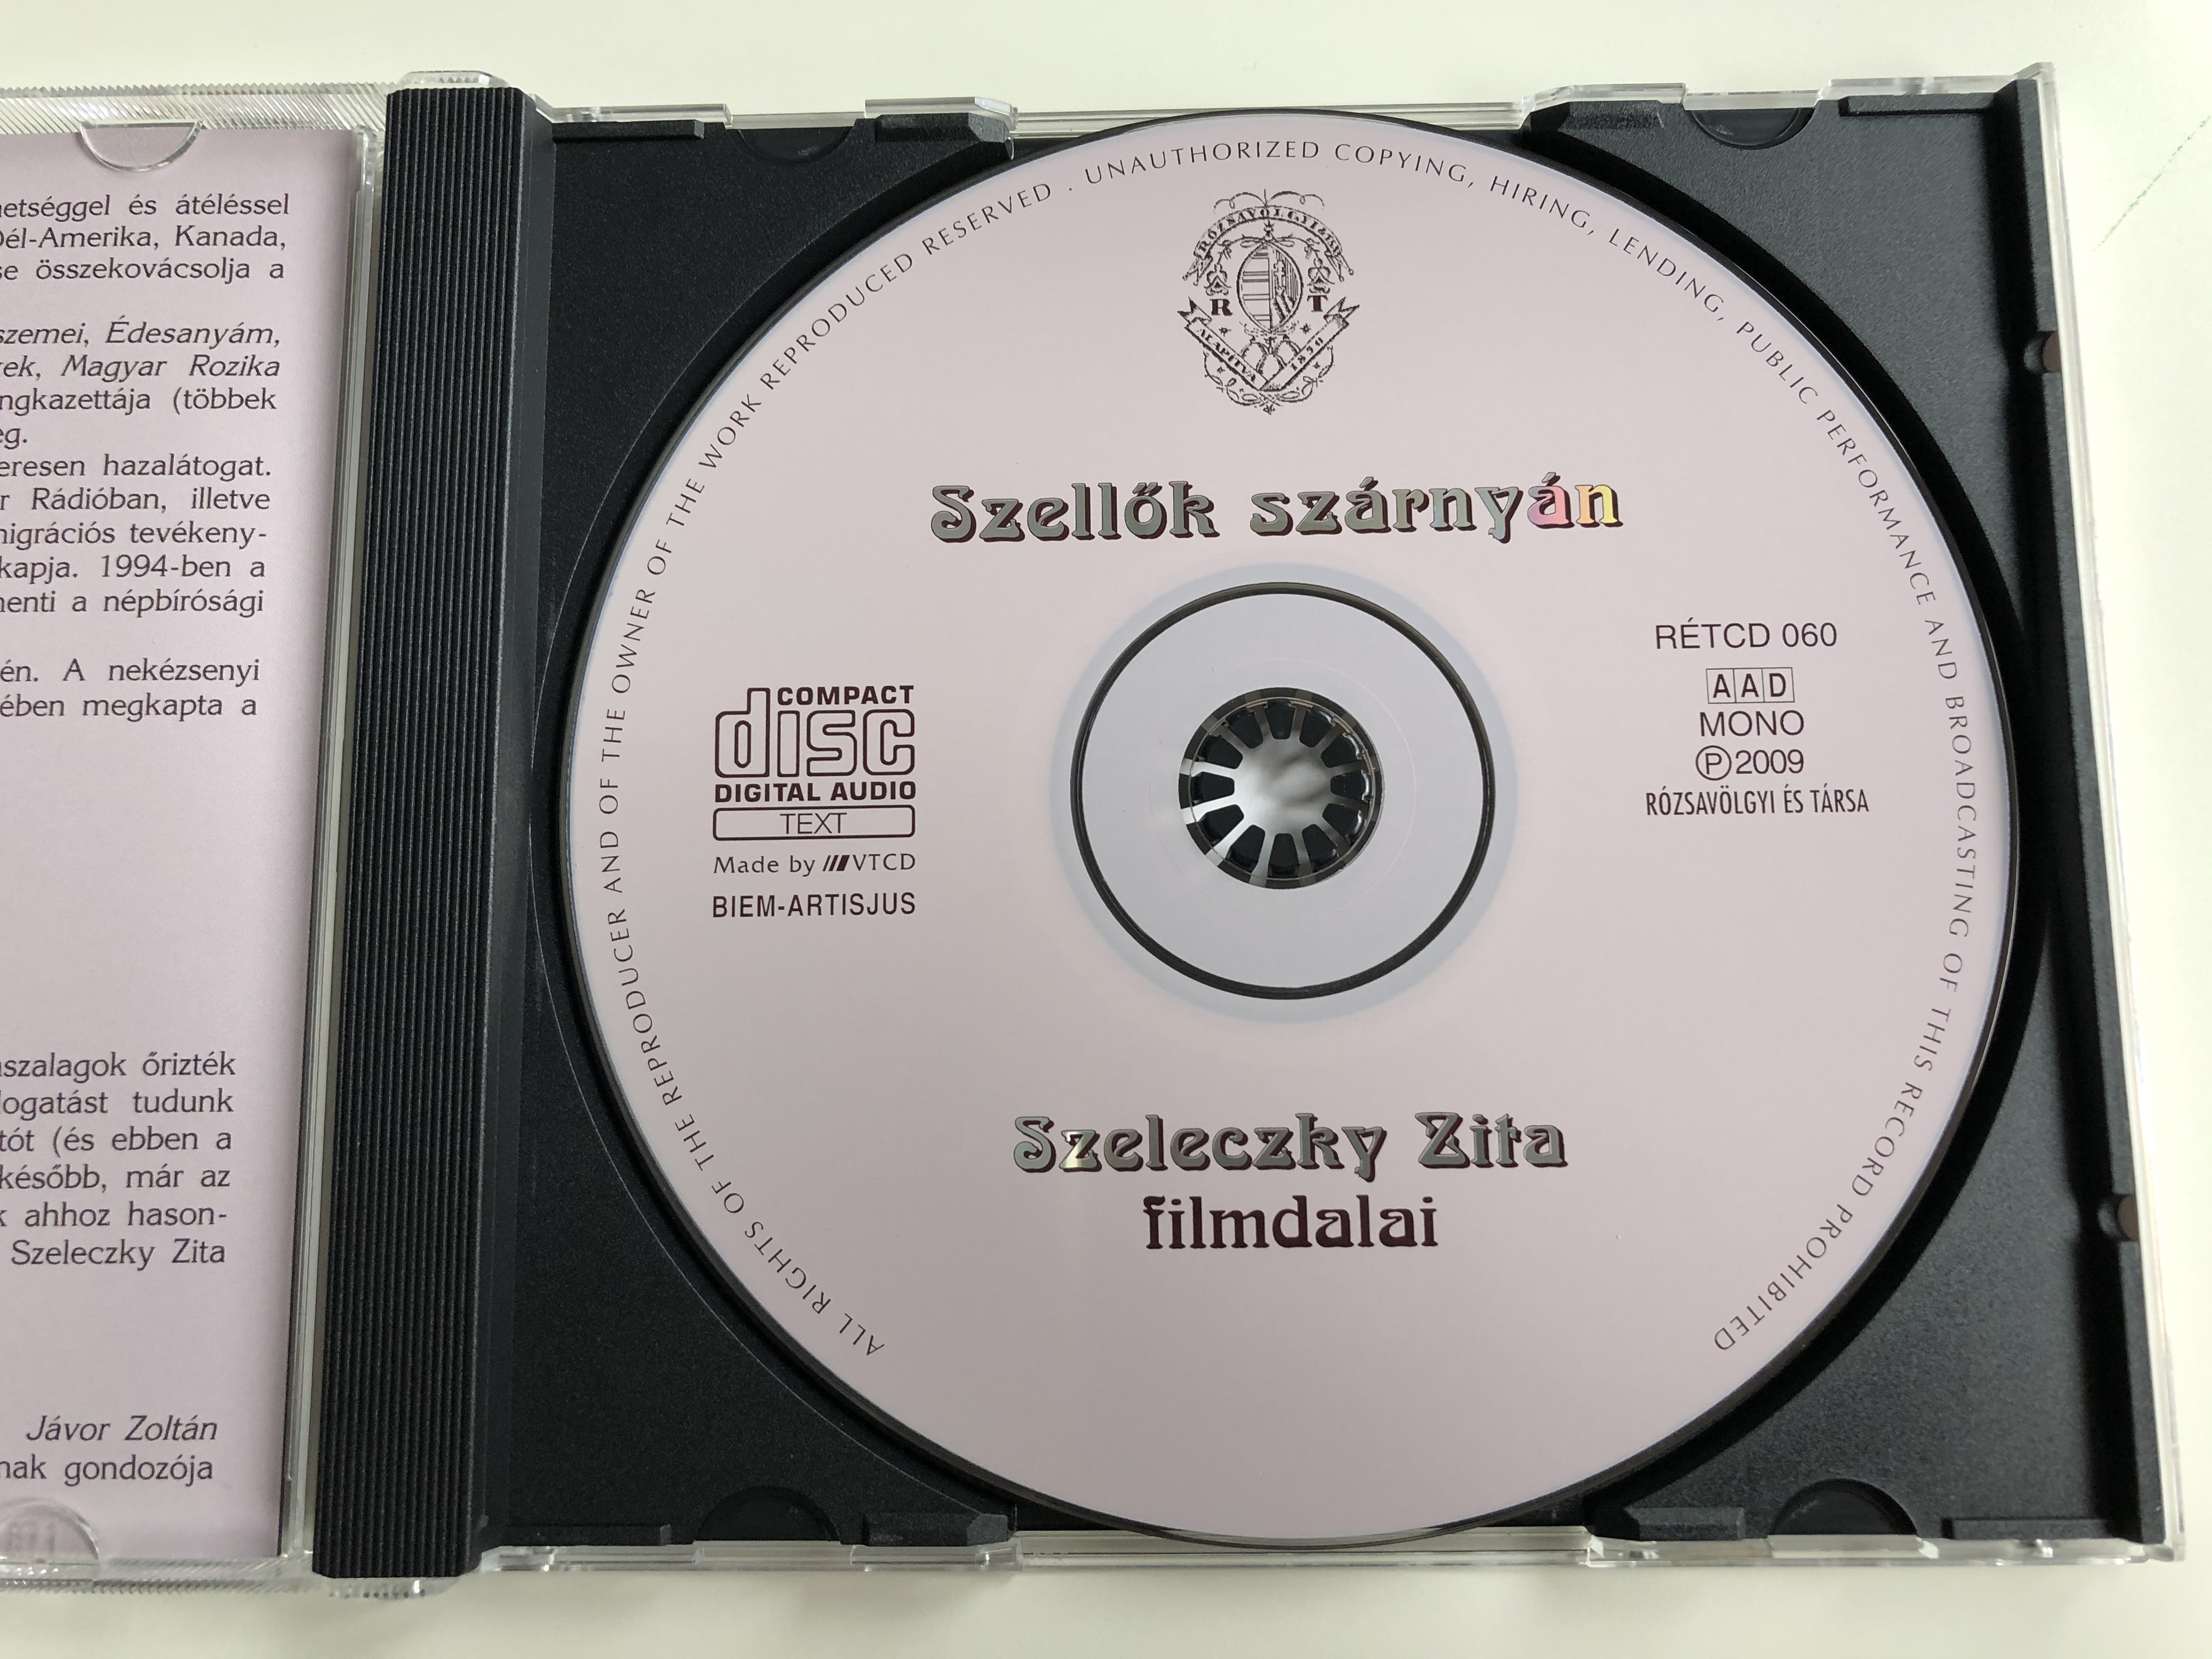 szellok-szarnyan-szeleczky-zita-filmdalai-r-zsav-lgyi-s-t-rsa-audio-cd-2009-mono-r-tcd-60-5-.jpg